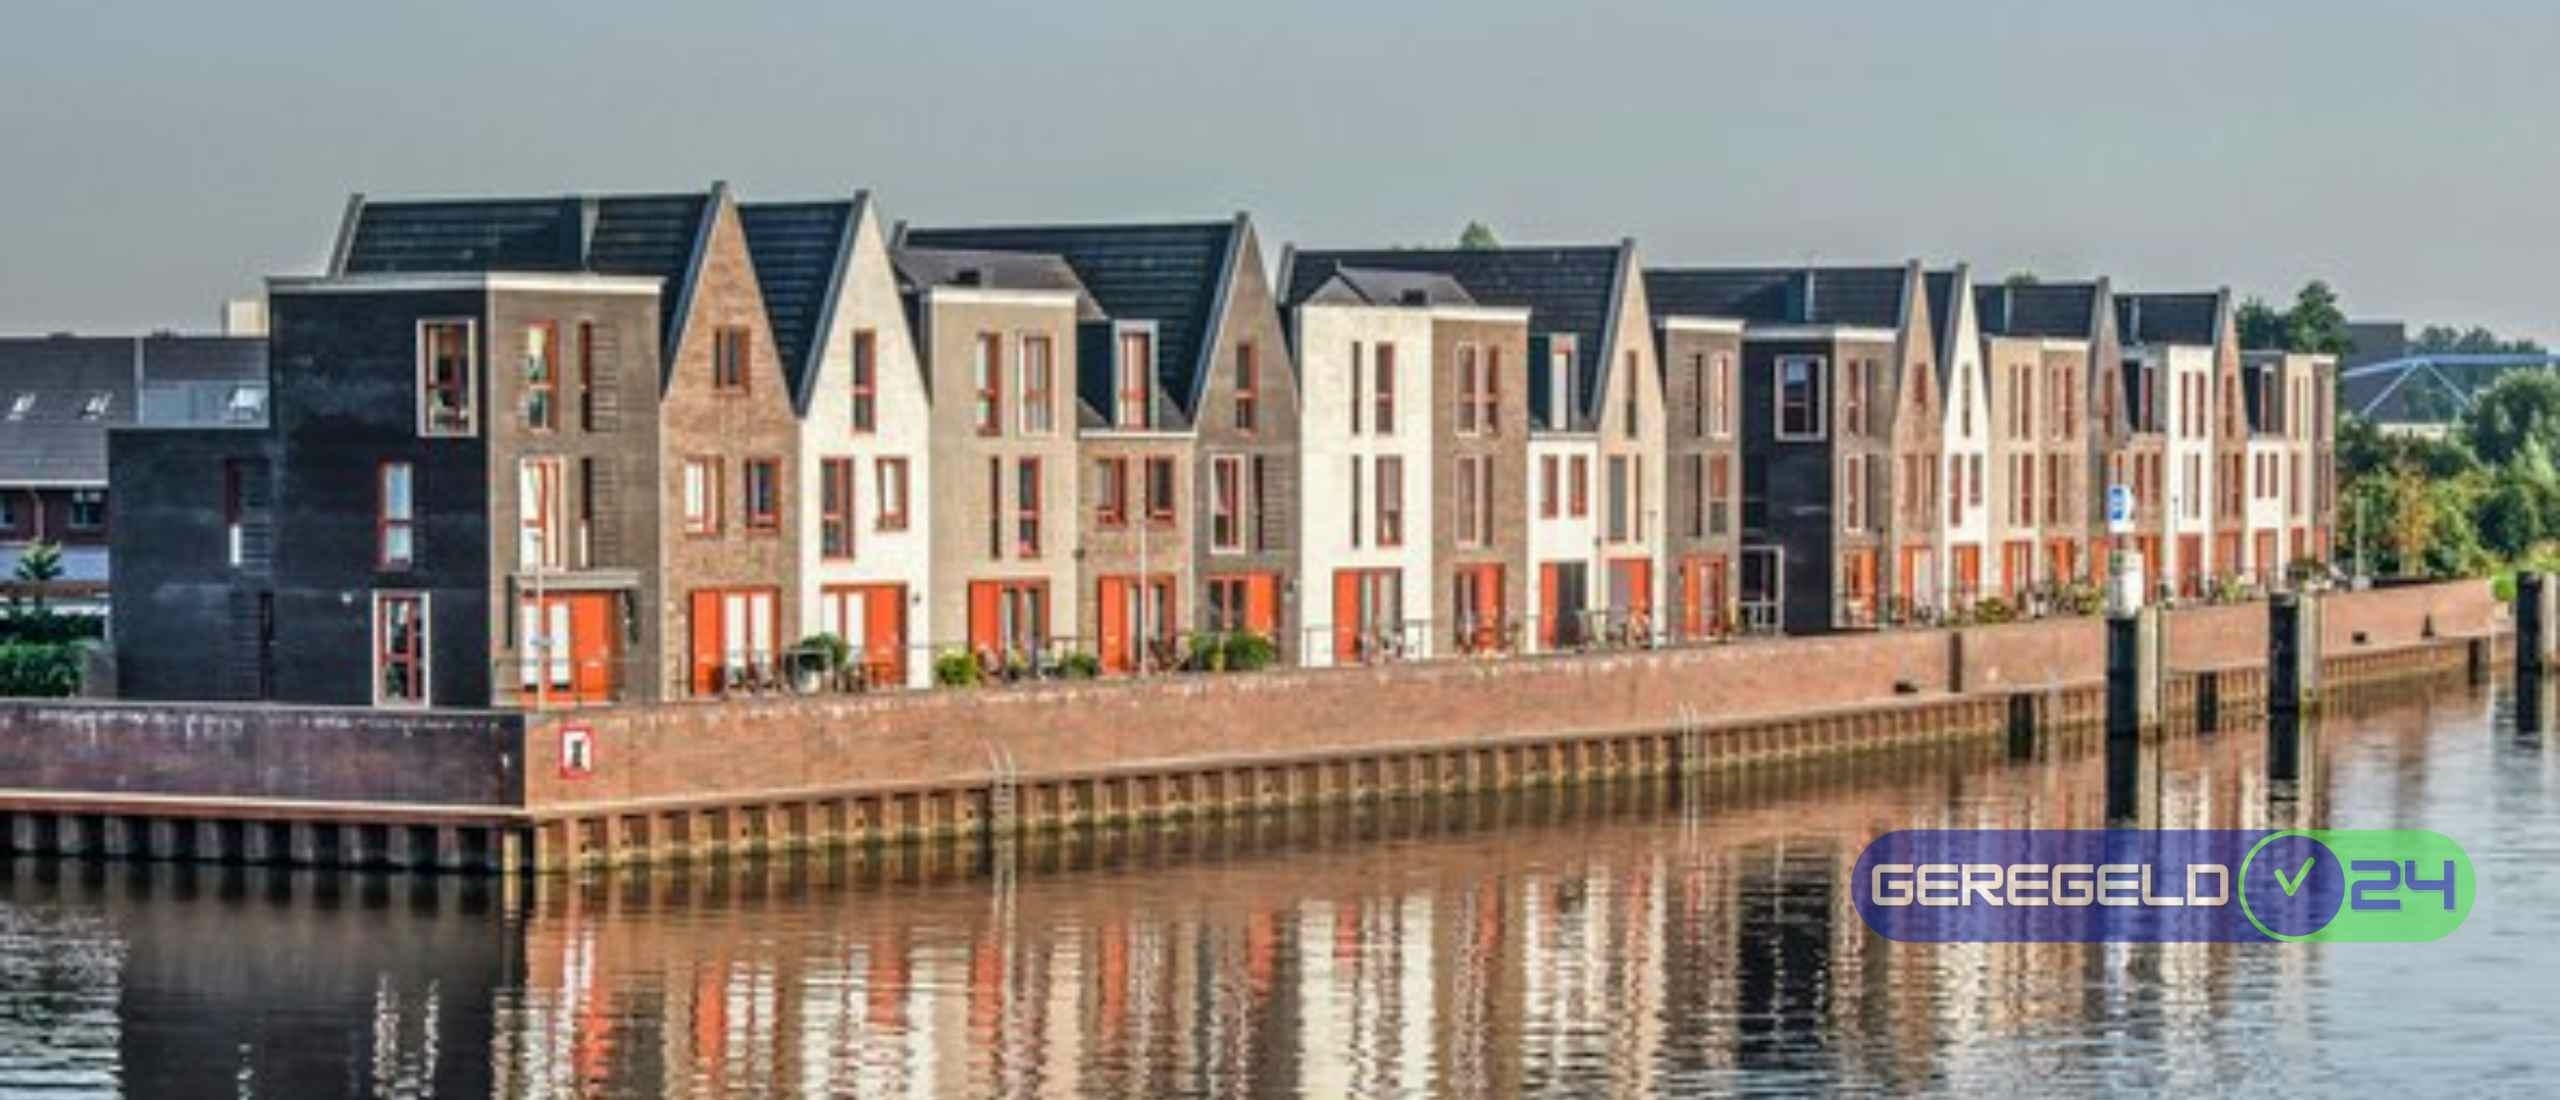 Vinexwijk: Modern woongemak en de perfecte plek voor gezinnen